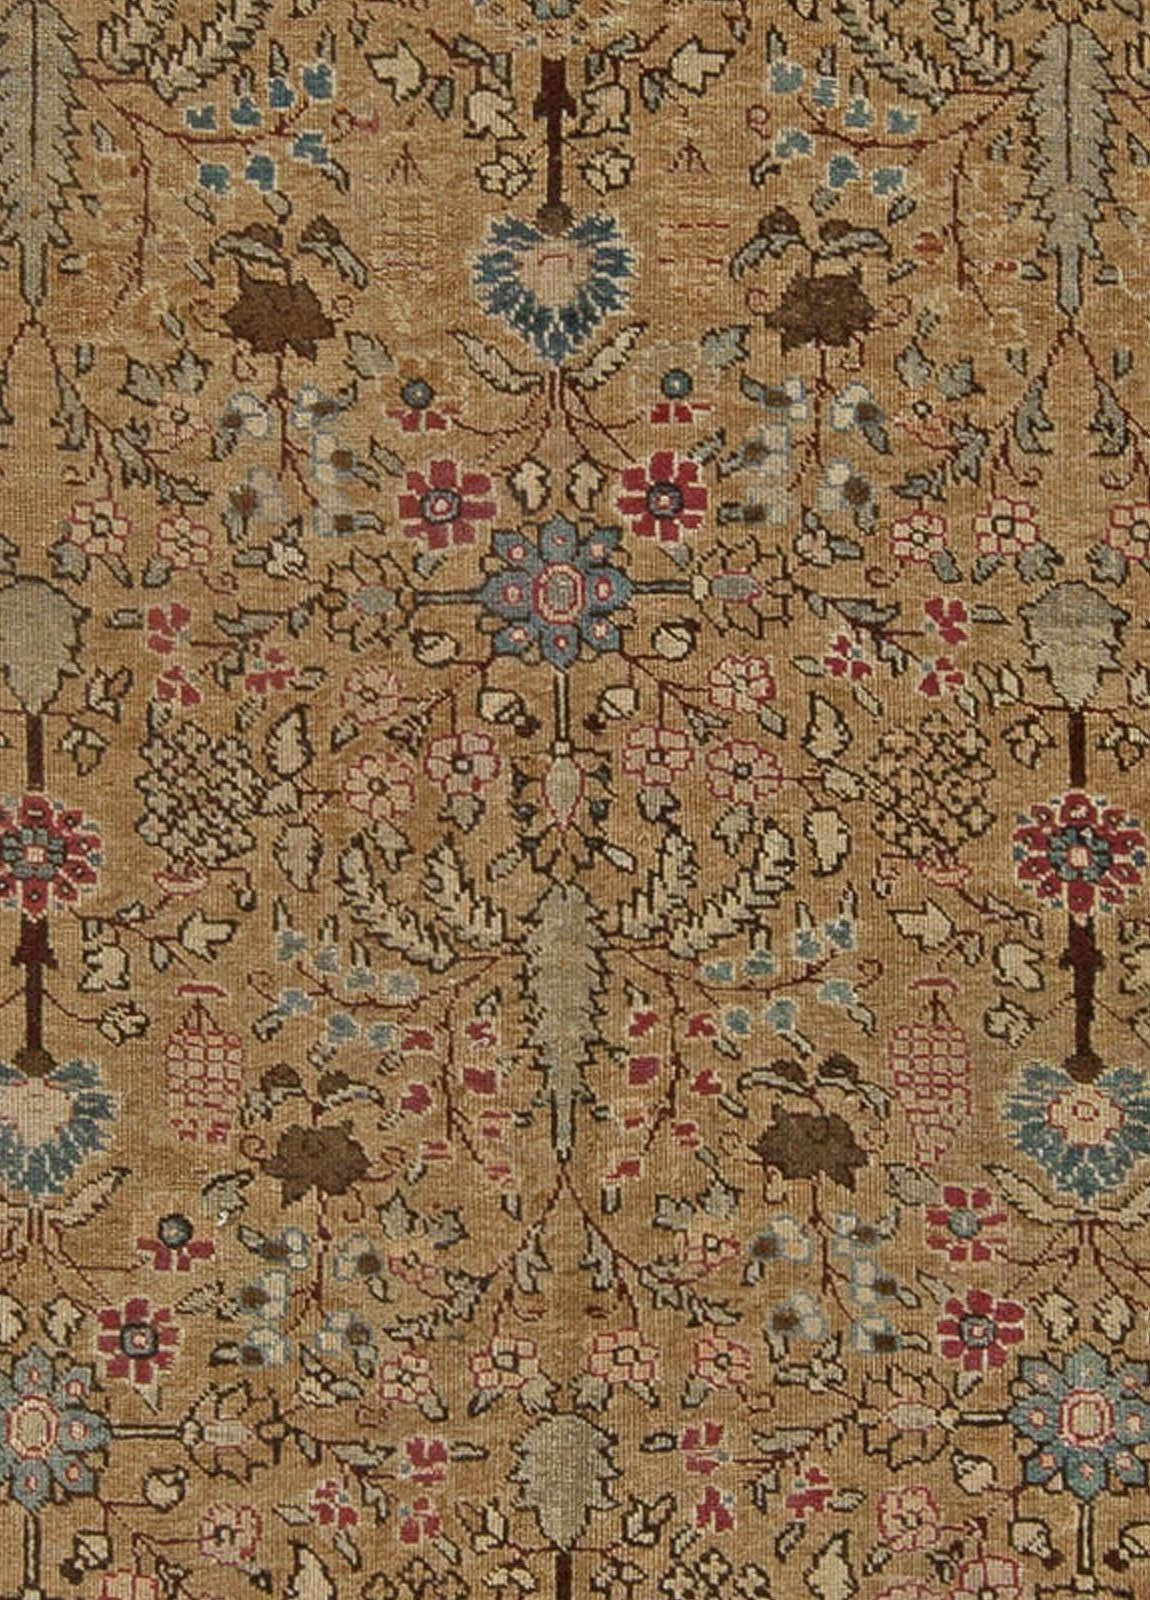 Antiker persischer Täbris-Teppich.
Größe: 9'2